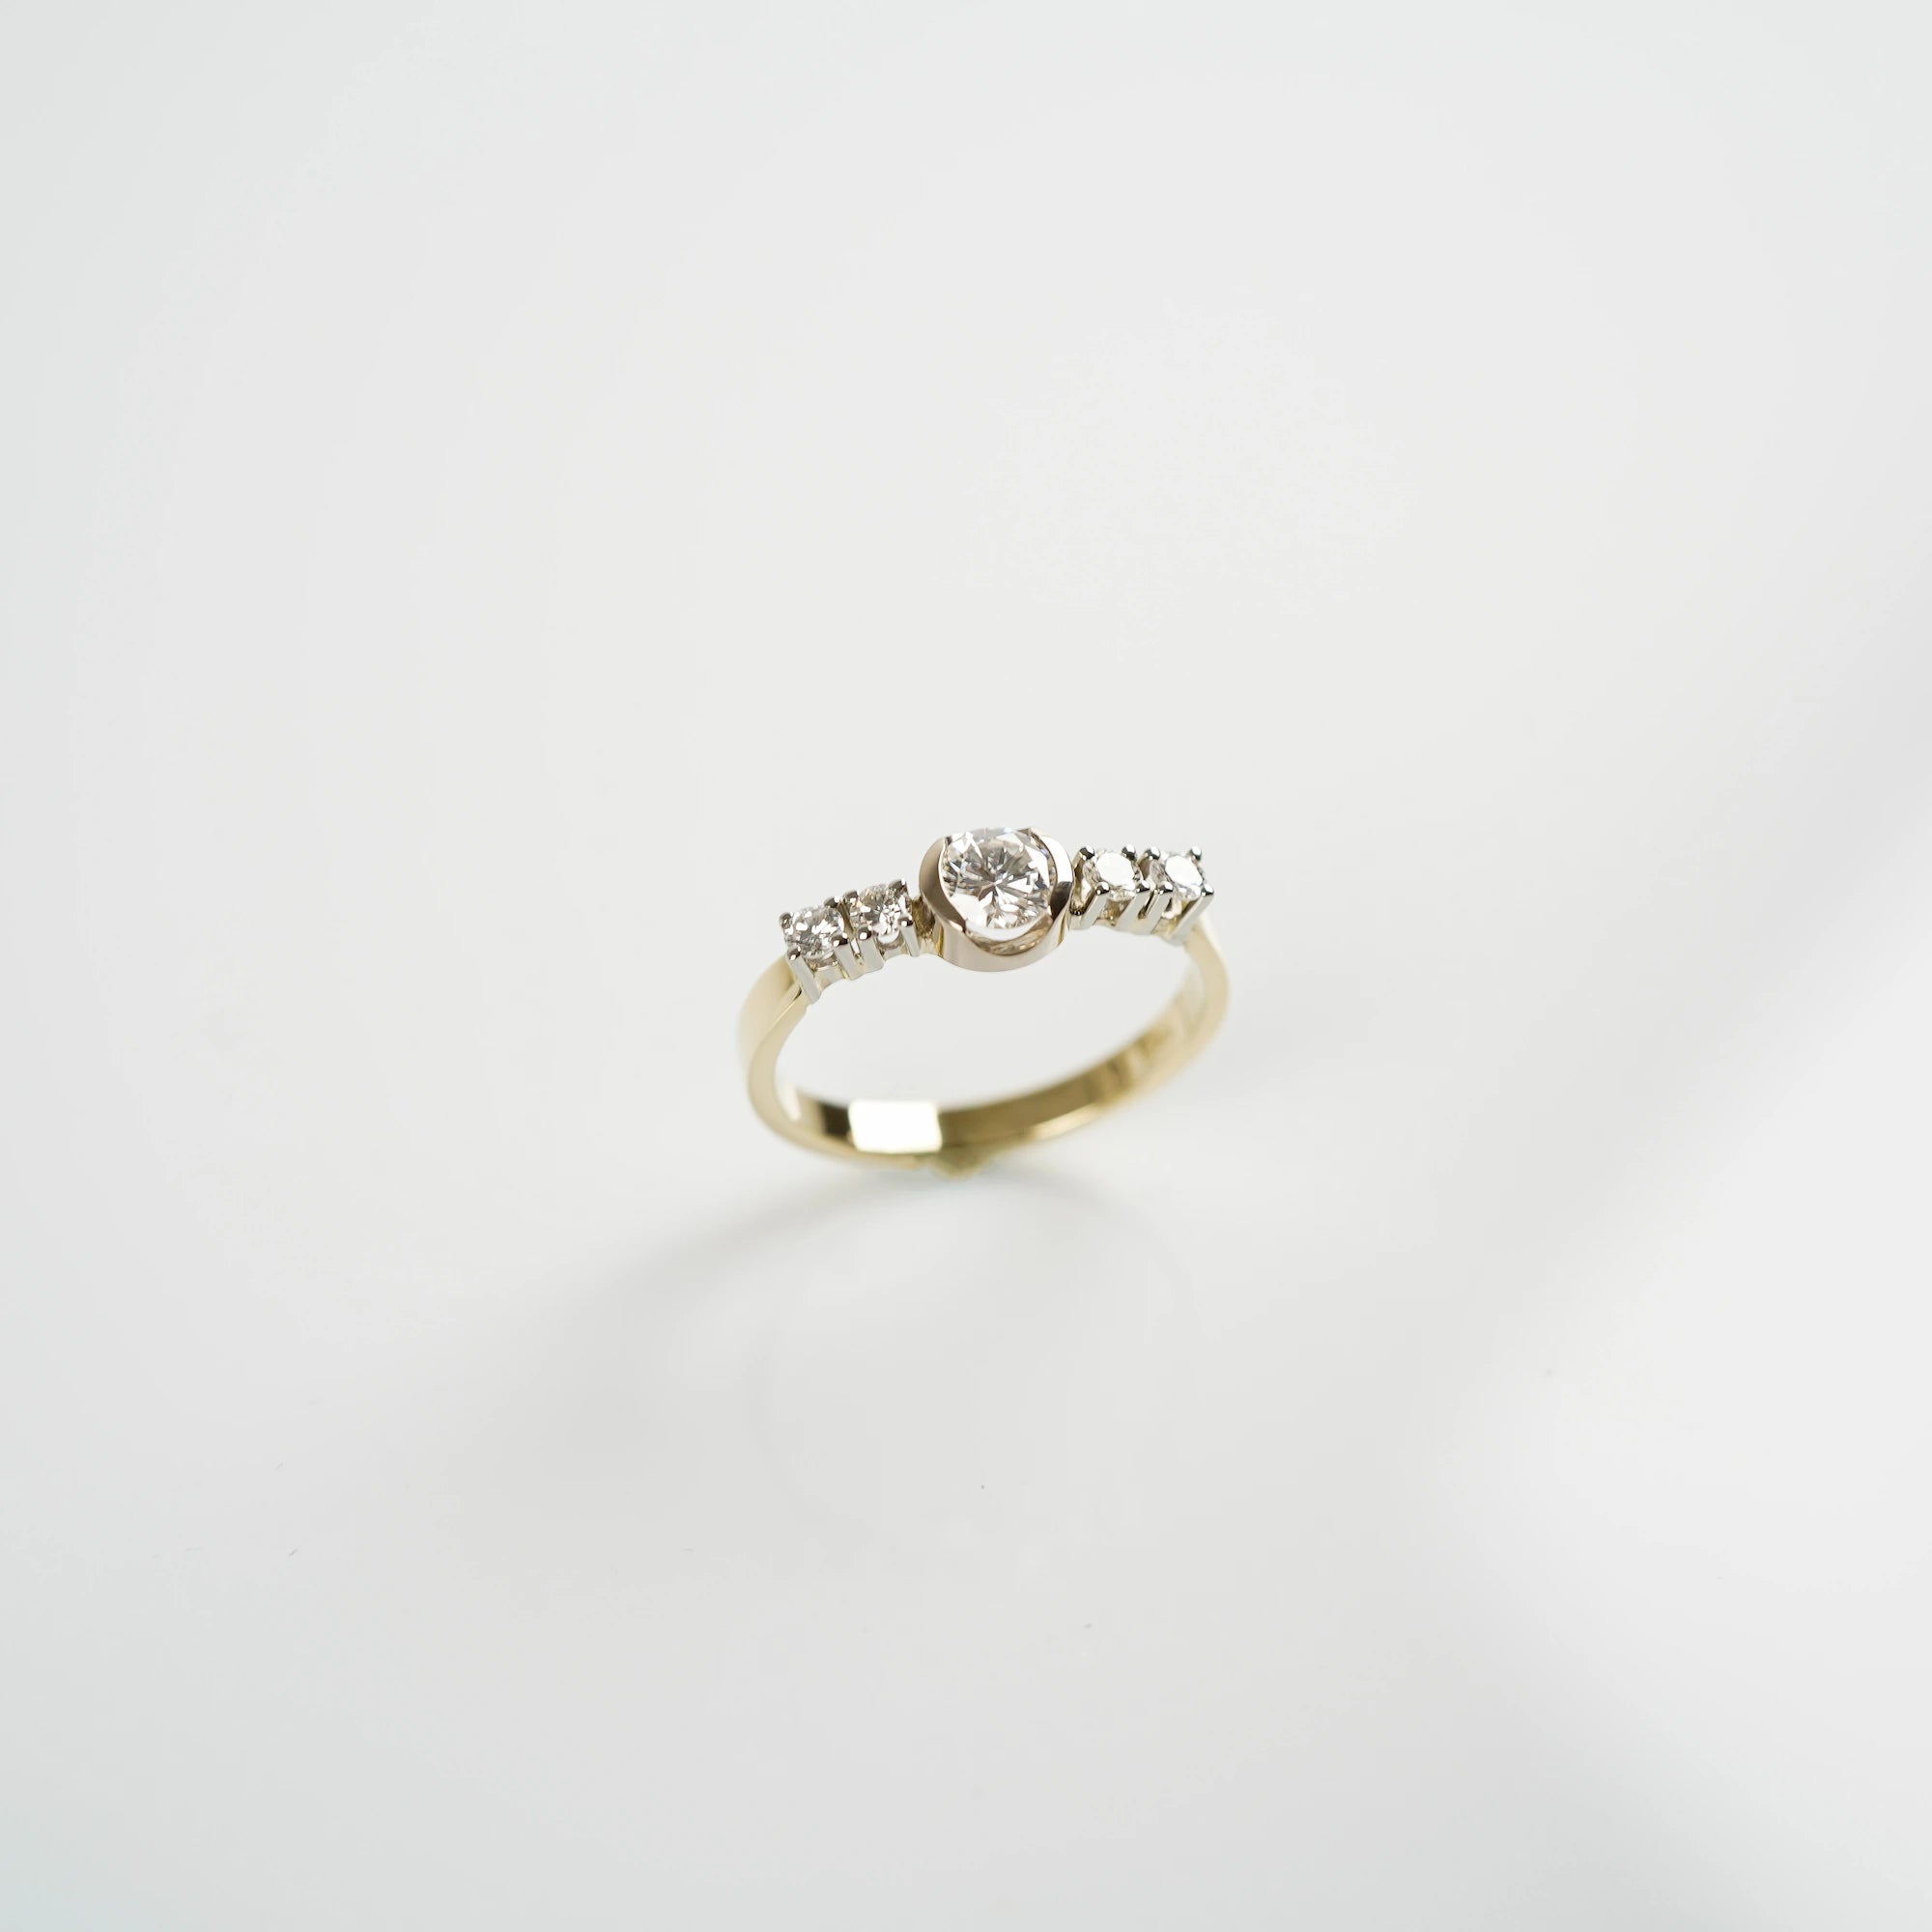 Produktfoto mit leicht schrägem Blick von Oben auf den gelbgoldenen Ring mit 5 gefassten Diamanten auf der Ringschiene, wovon der zentrale Stein der Größte ist